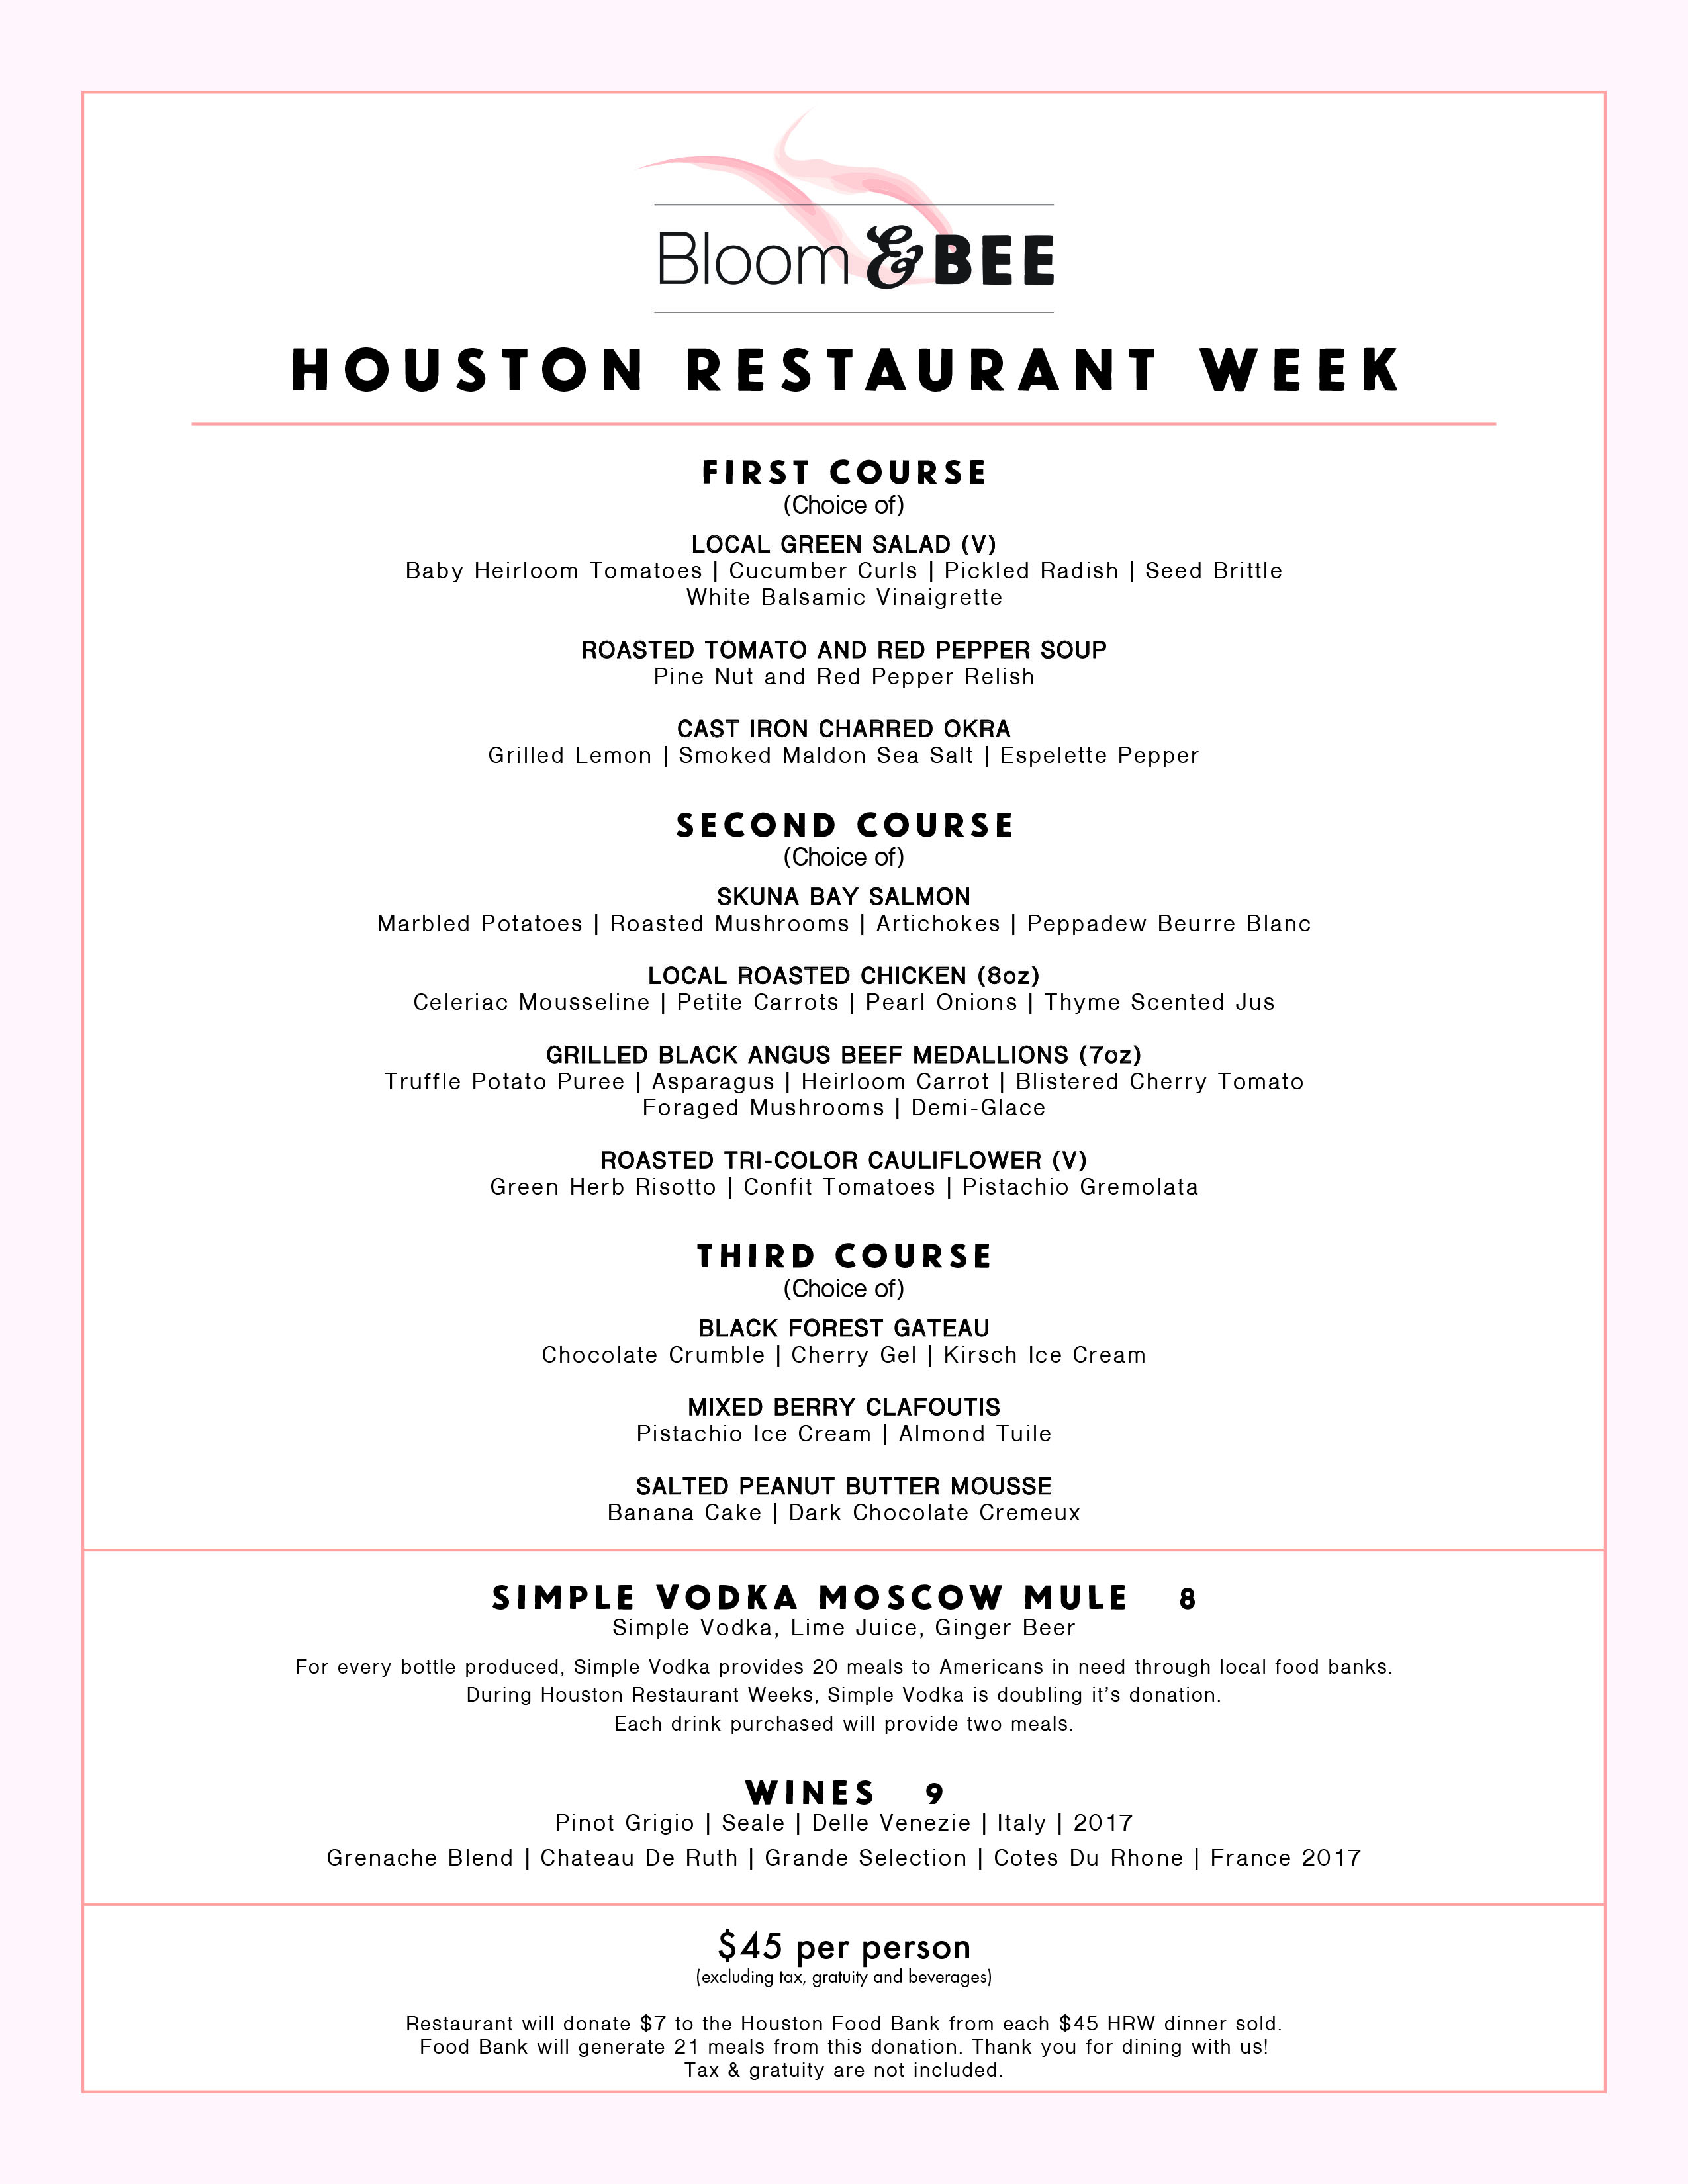 Bloom & Bee Houston Restaurant Weeks